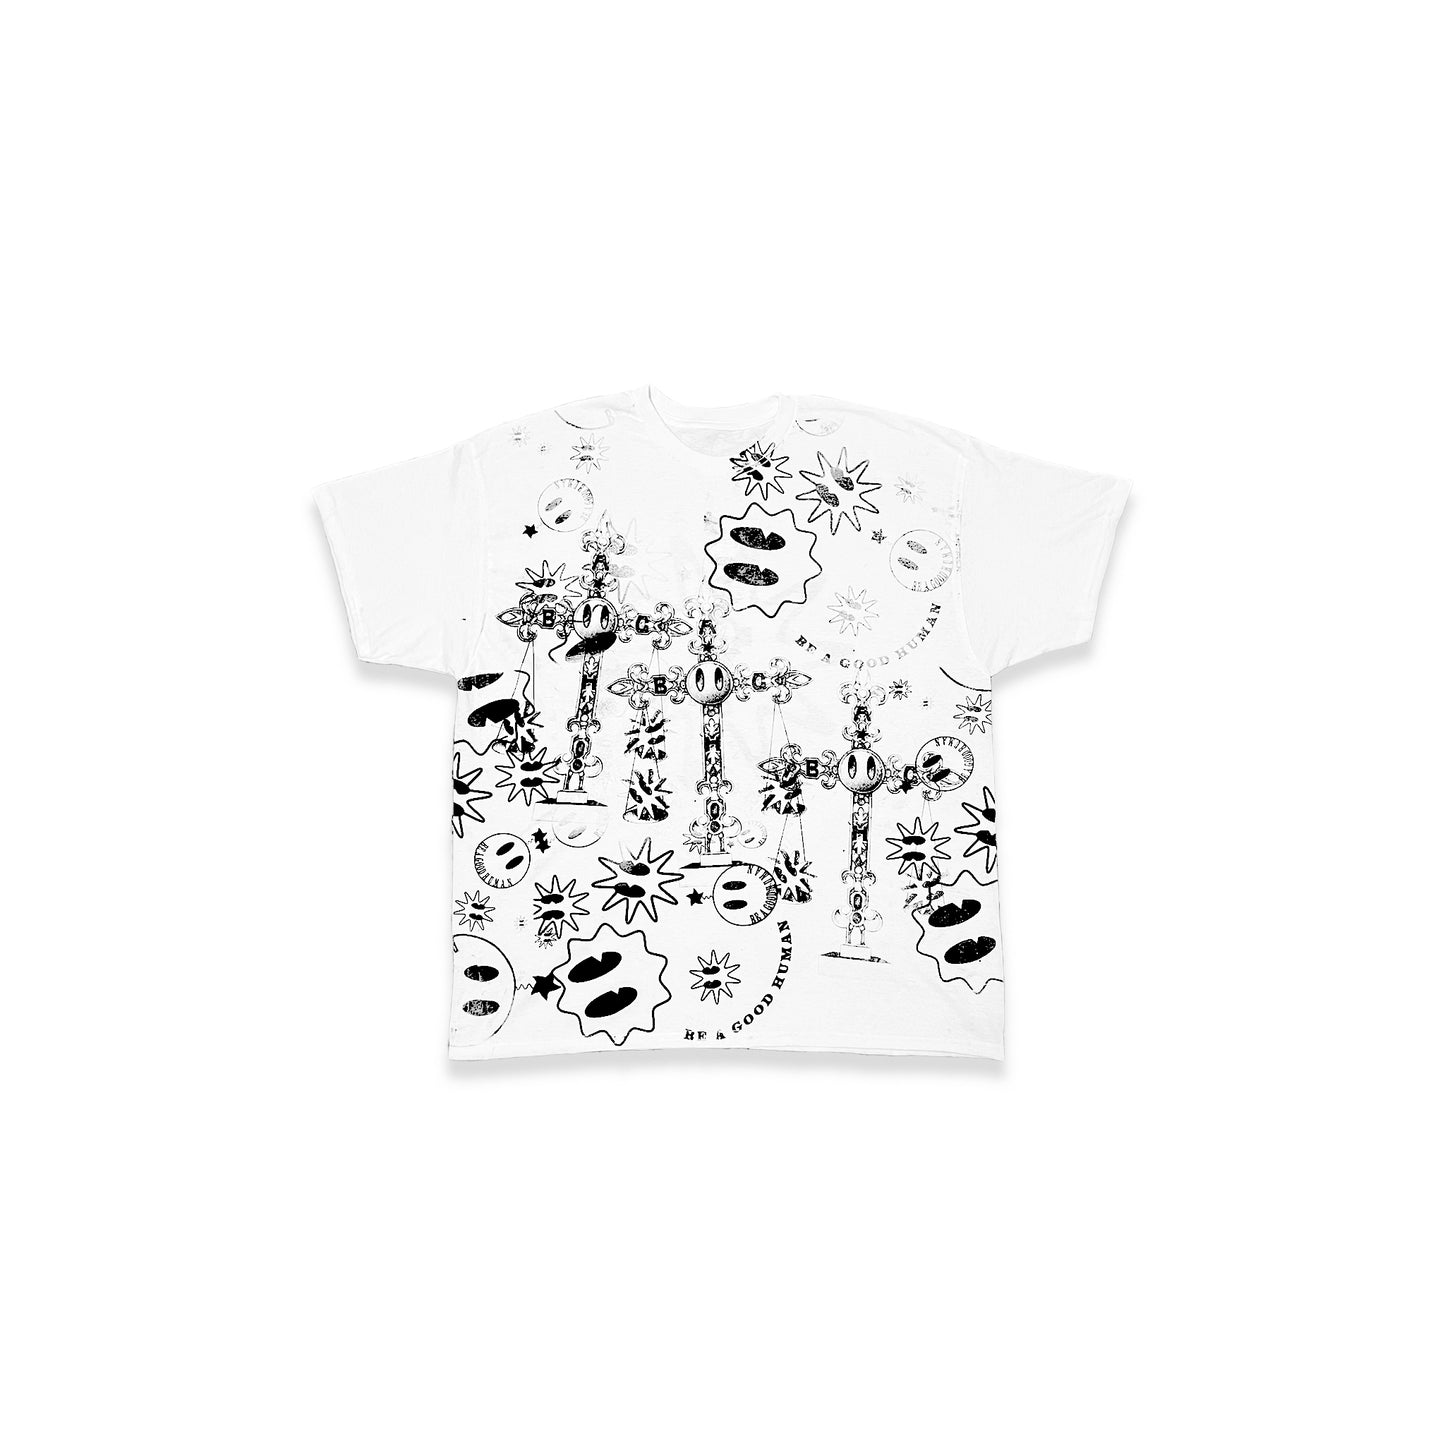 BAGH Messy T-Shirt 02